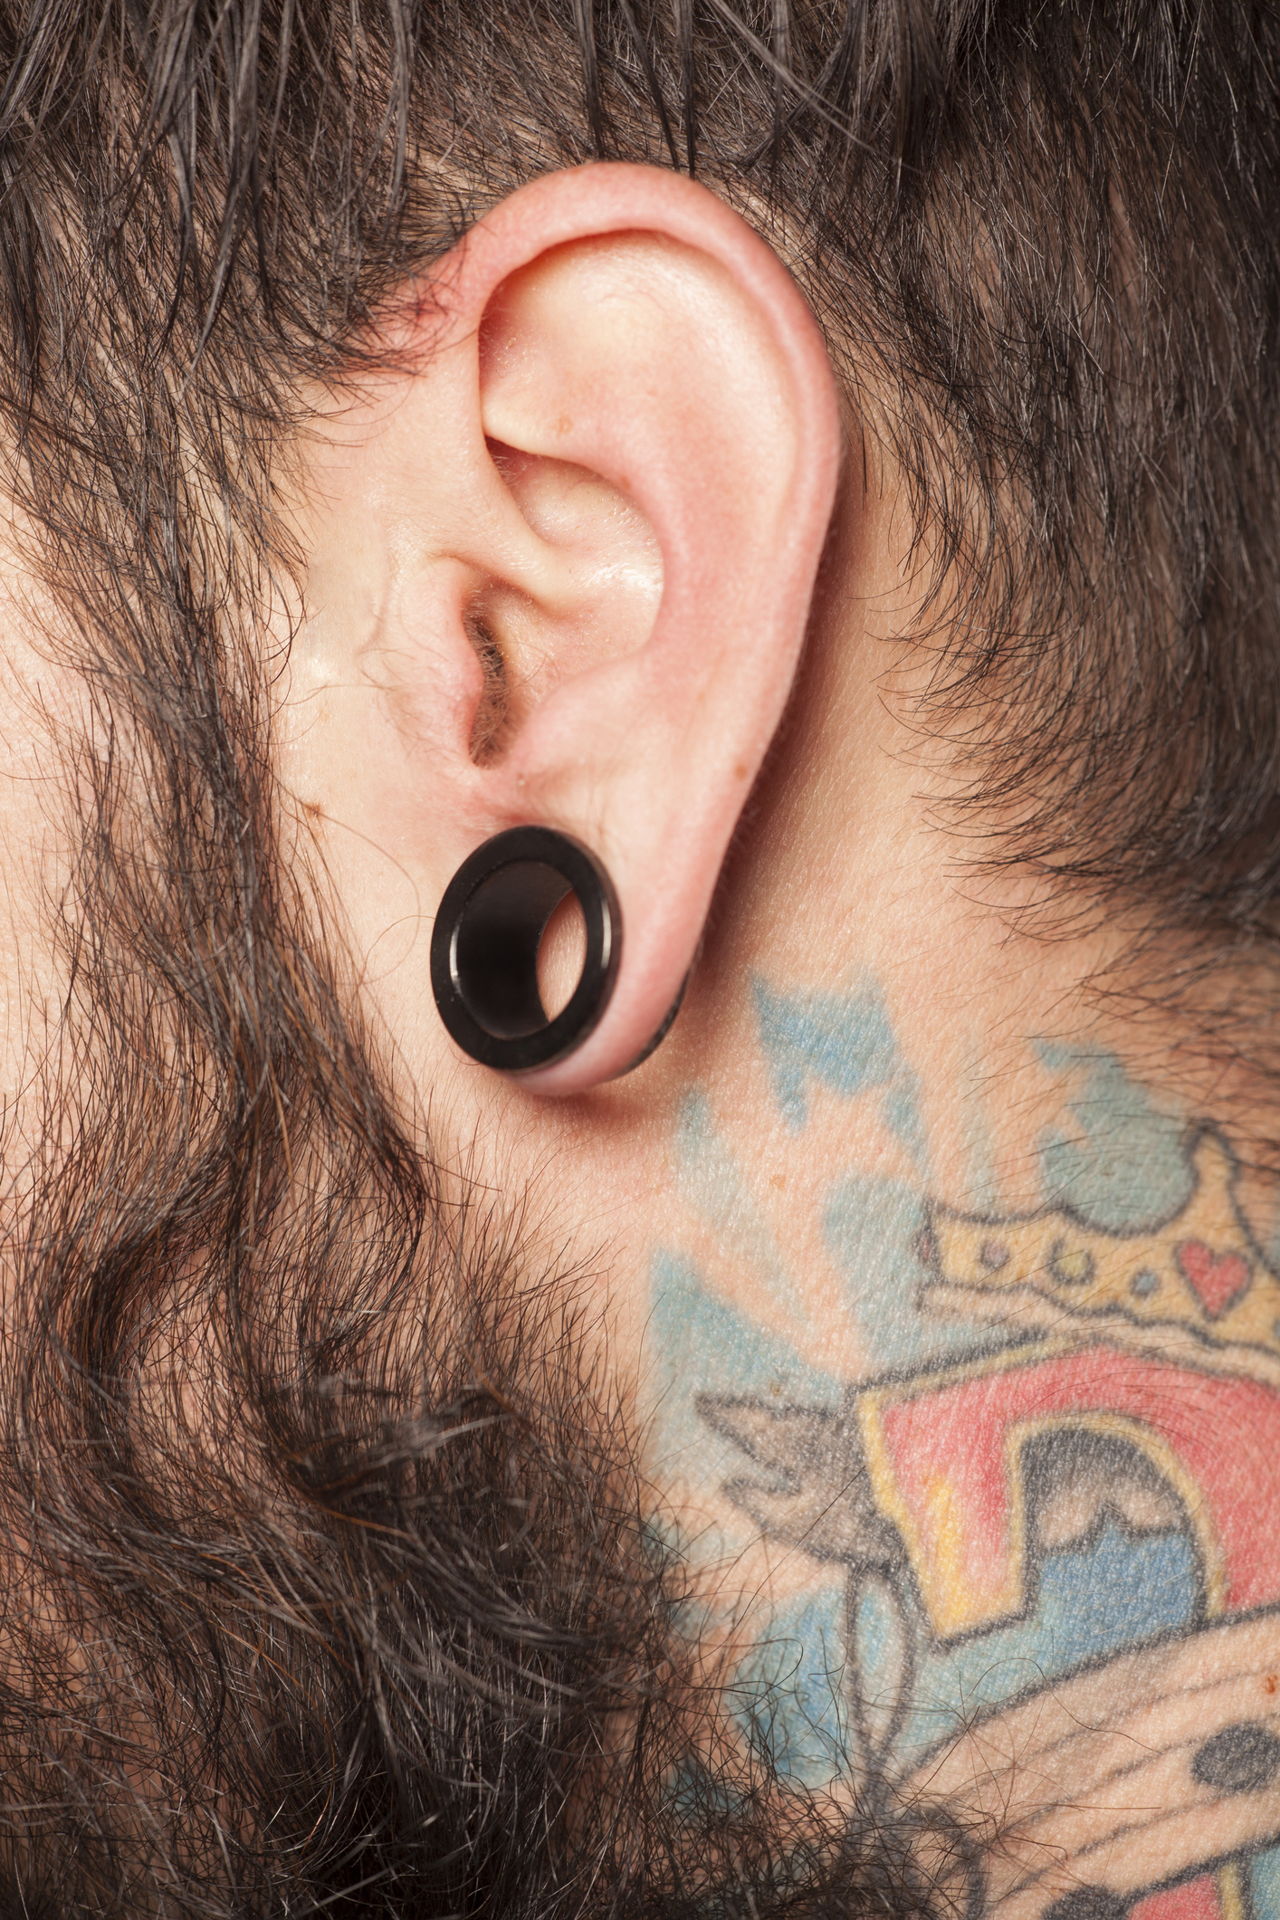 Ear Gauge Sizes Explained in Full